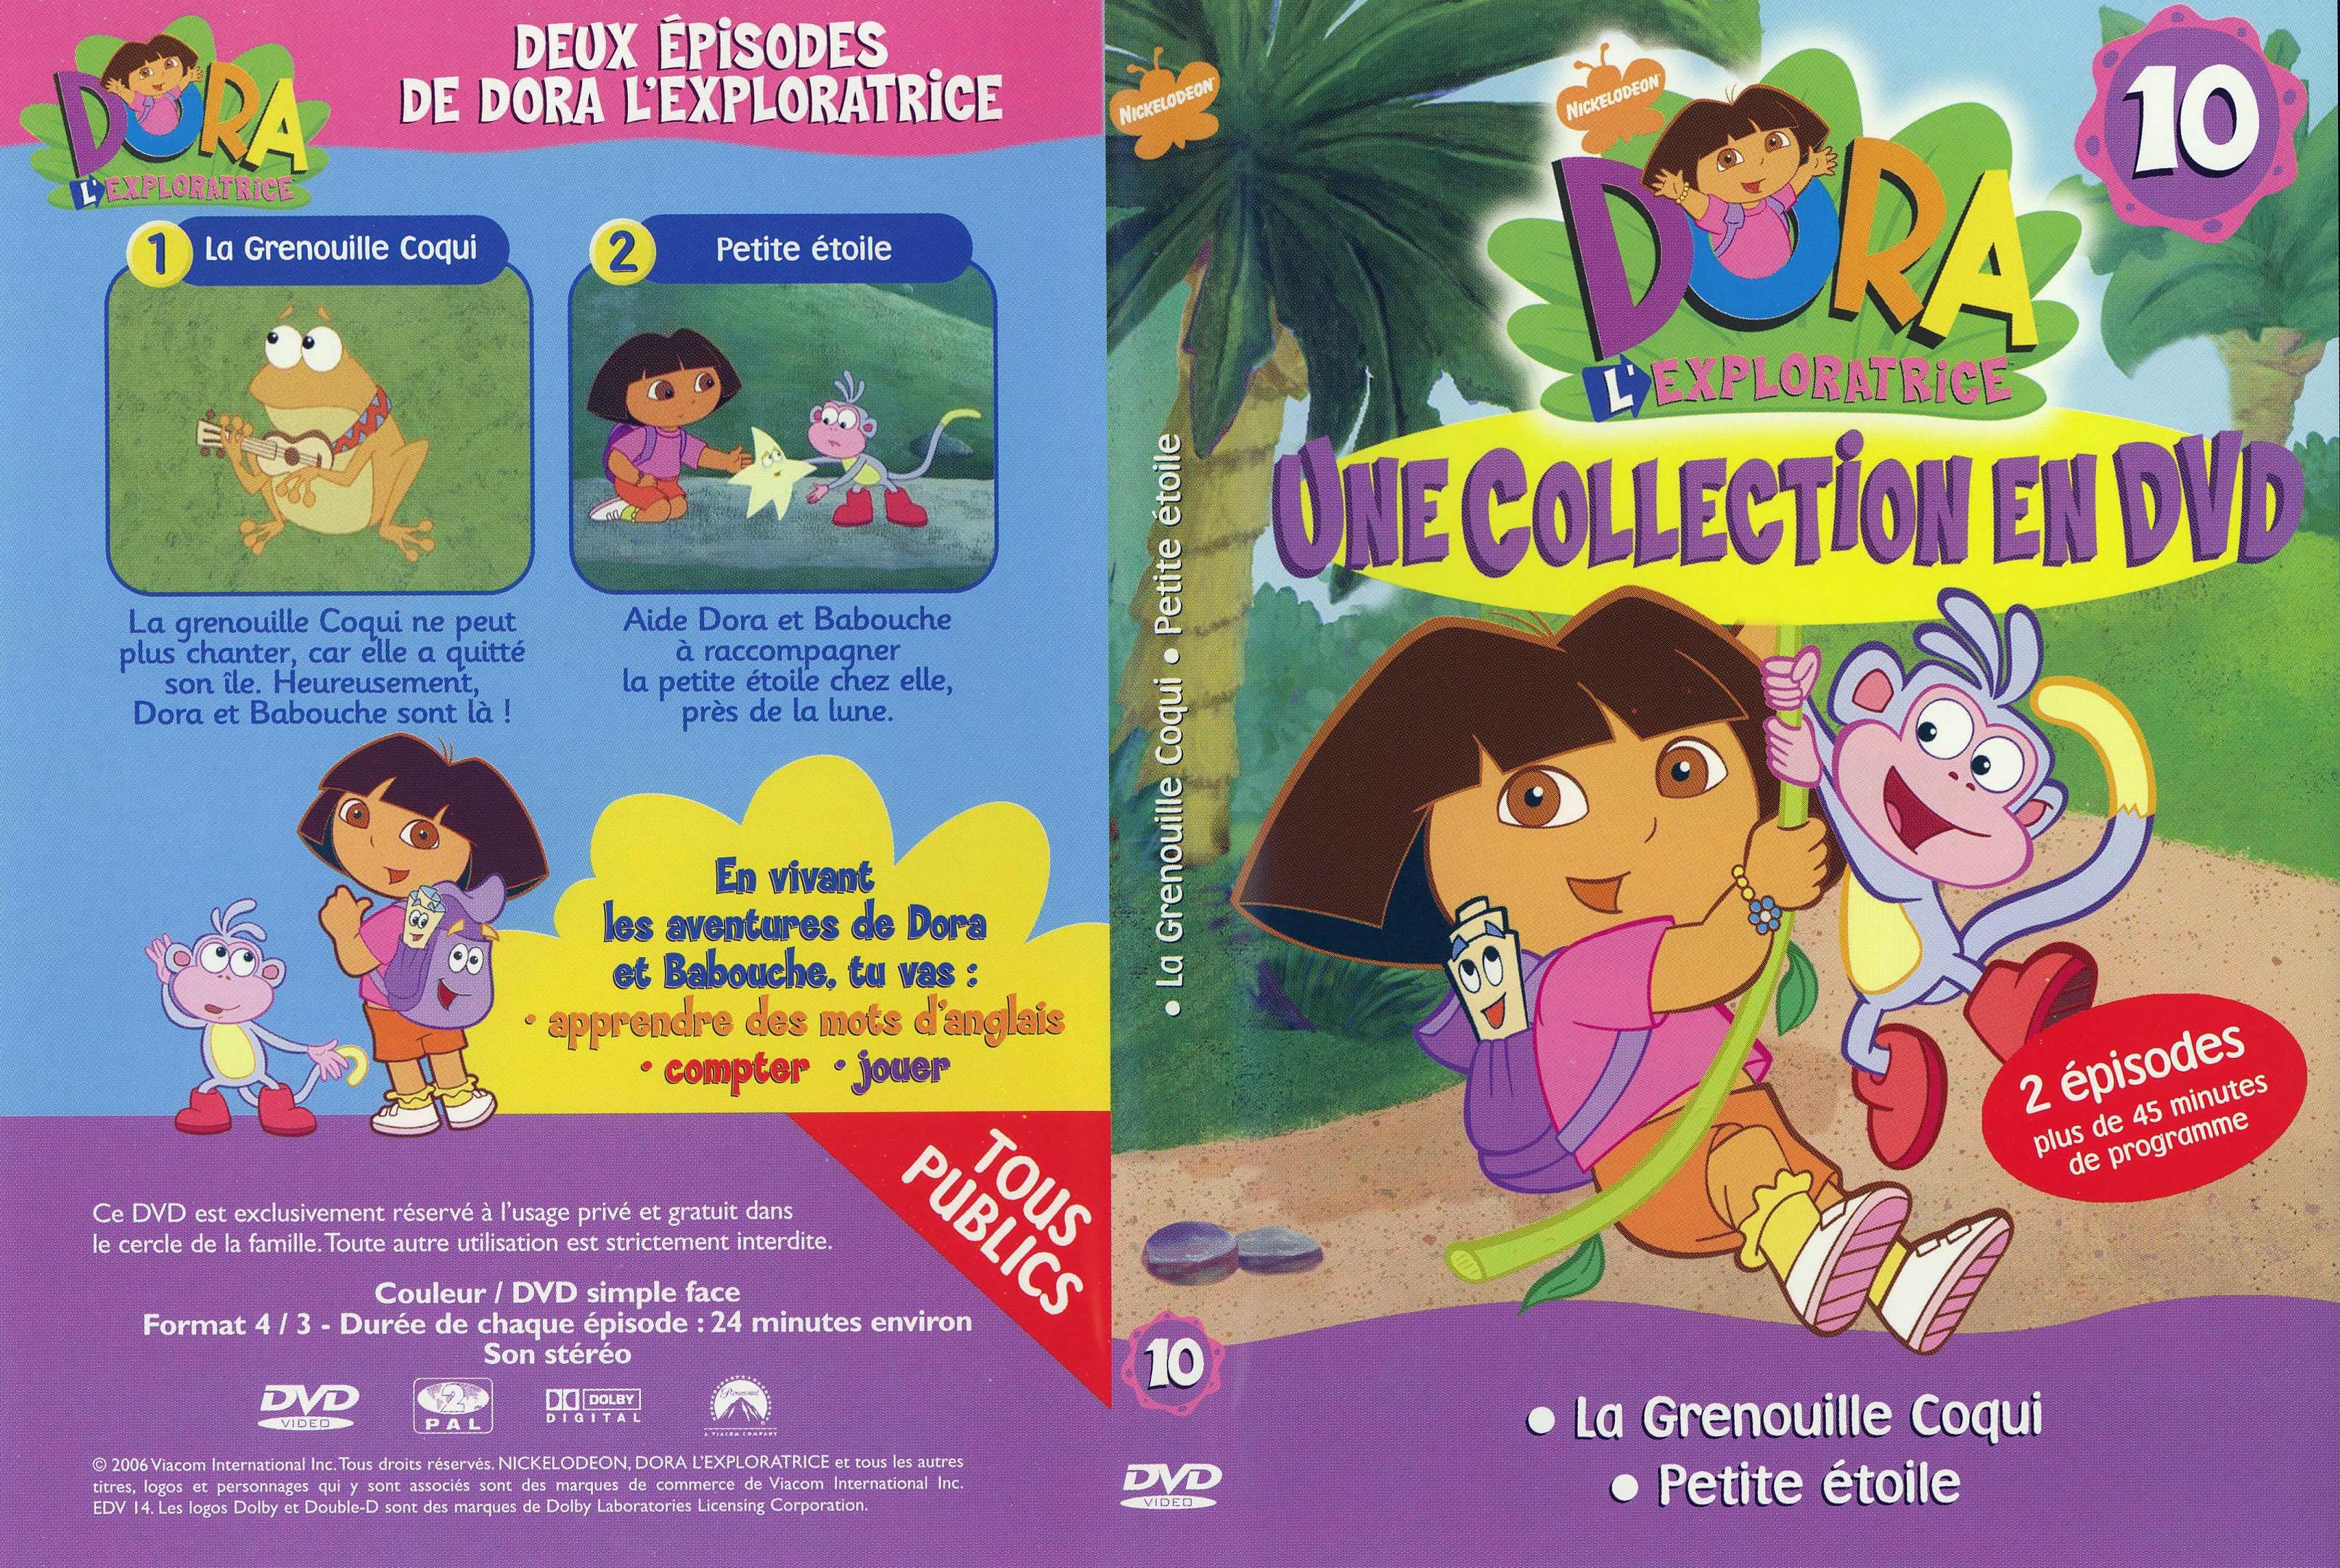 Jaquette DVD De Dora Lexploratrice Vol 10 Cinéma Passion.